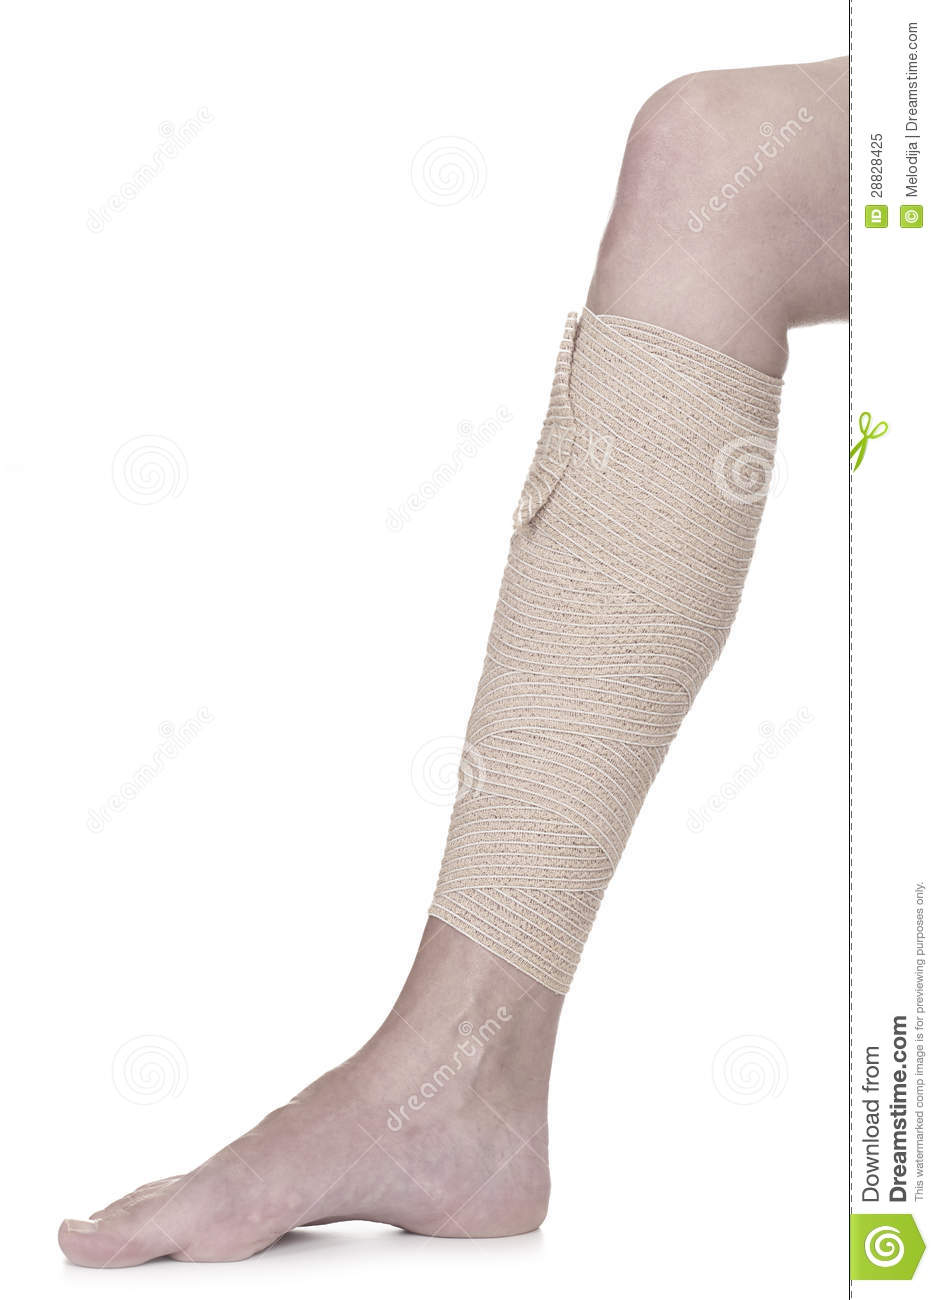 Bandaged Leg With Elastic Bandage Royalty Free Stock Photo   Image    